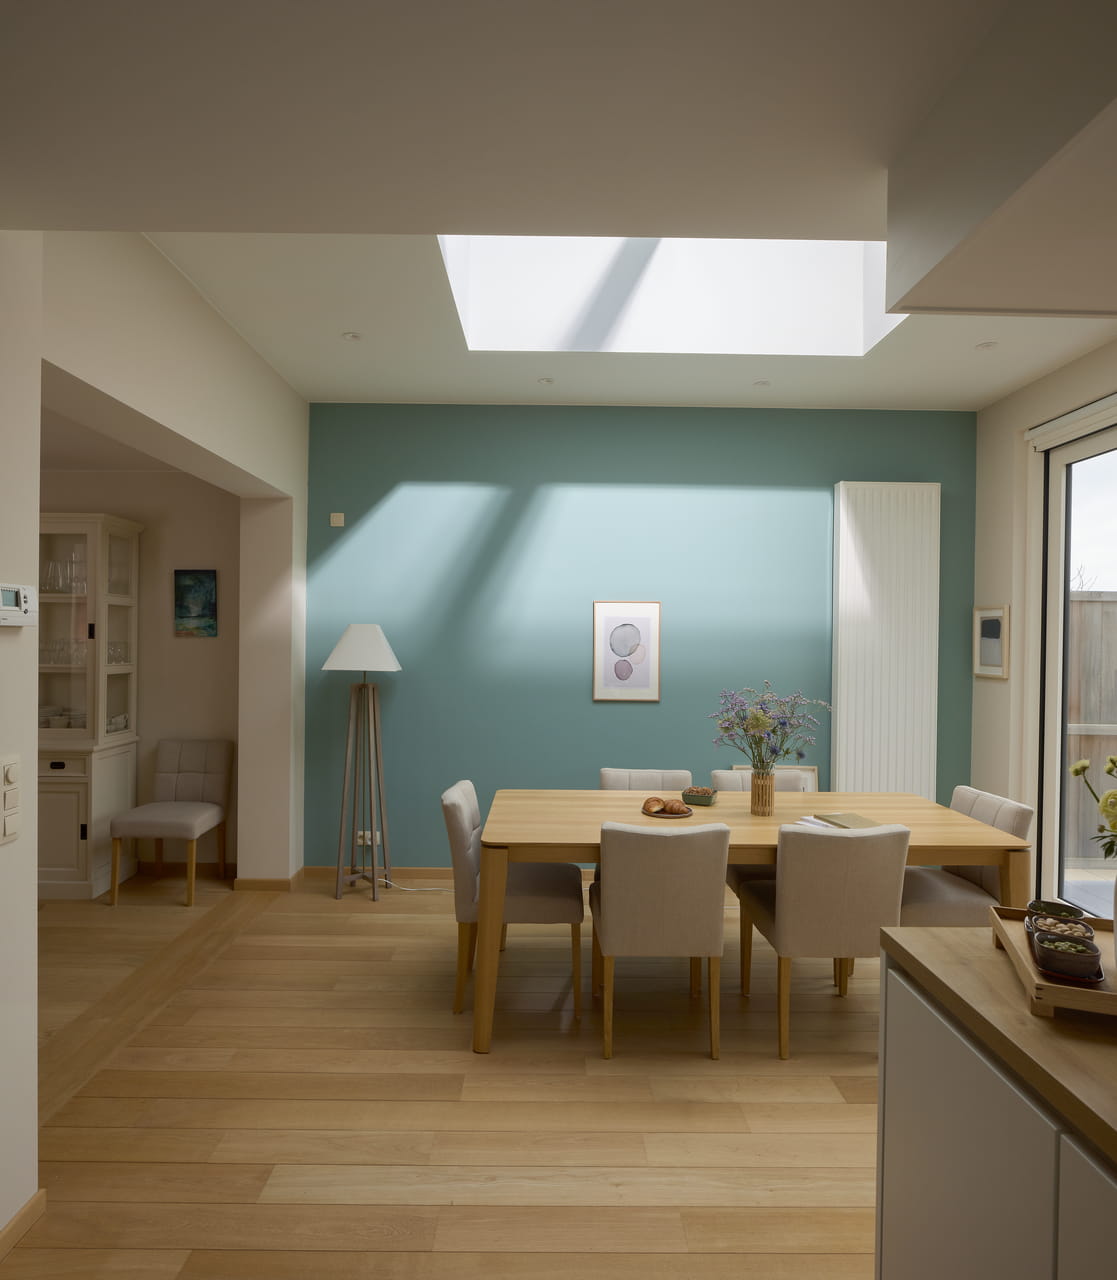 Moderne eetkamer met natuurlijk licht van VELUX dakvenster, houten vloeren en eenvoudige decoratie.